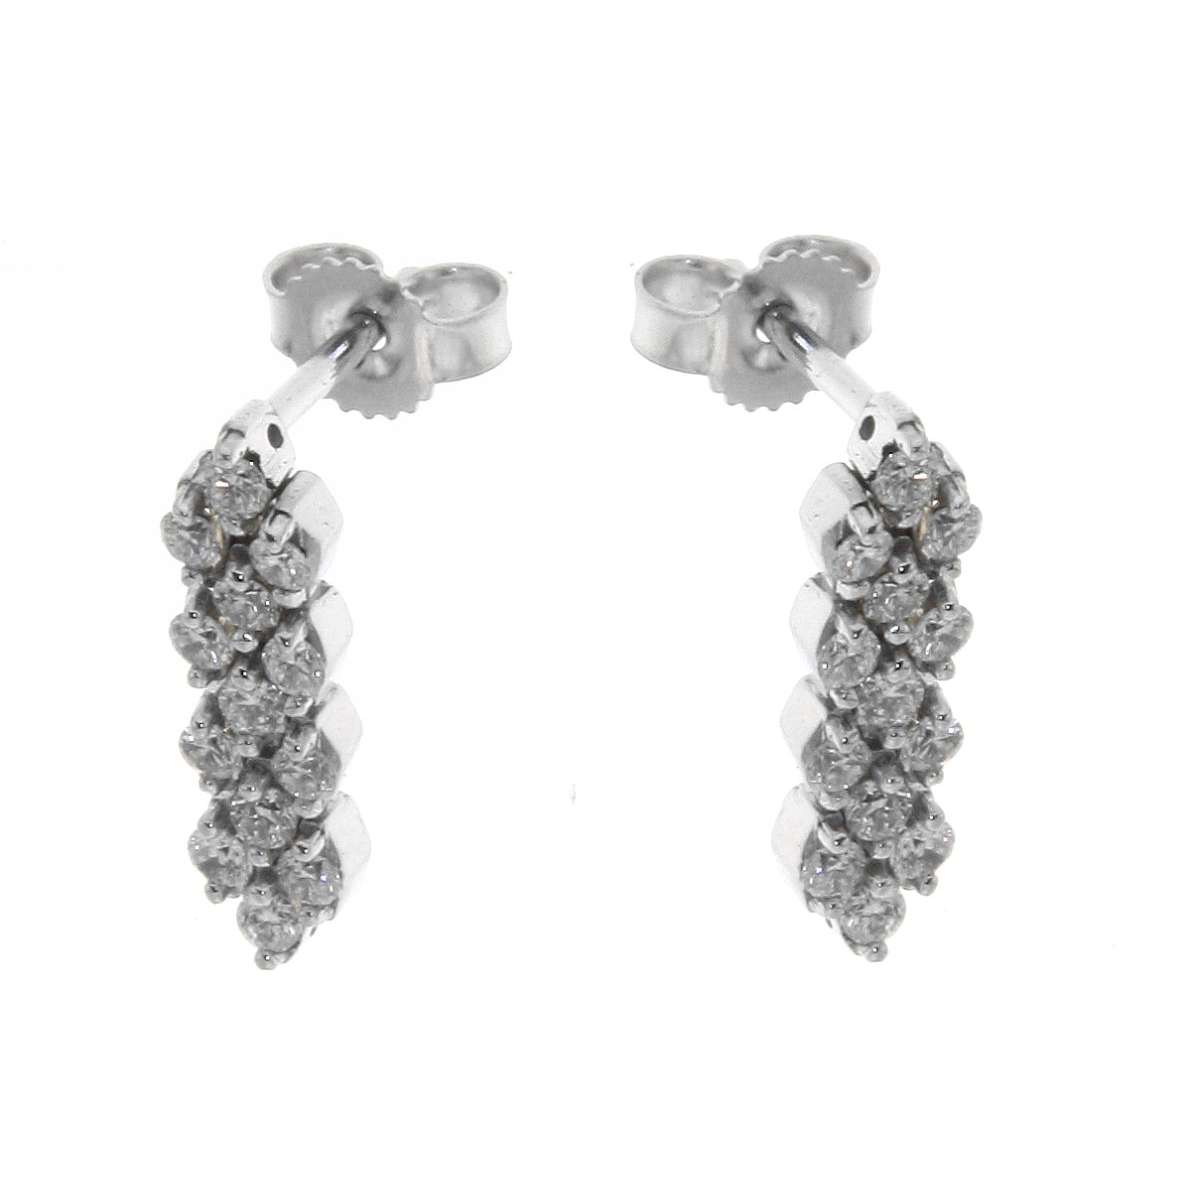 Dangling earrings 0.60 carats diamonds G-VS1